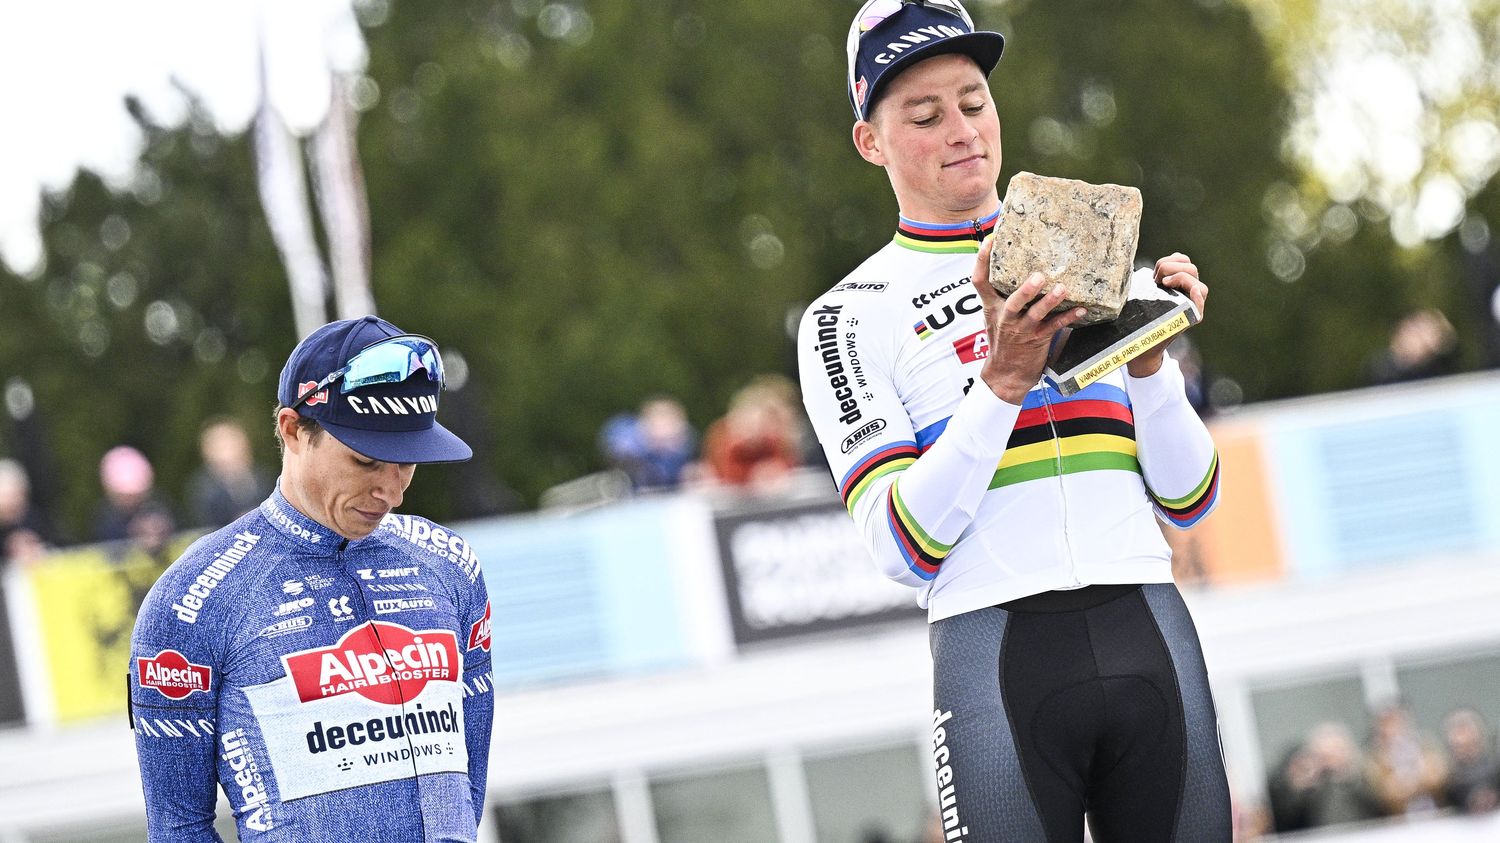 Paris-Roubaix: Mathieu van der Poel paves his royal path into legend